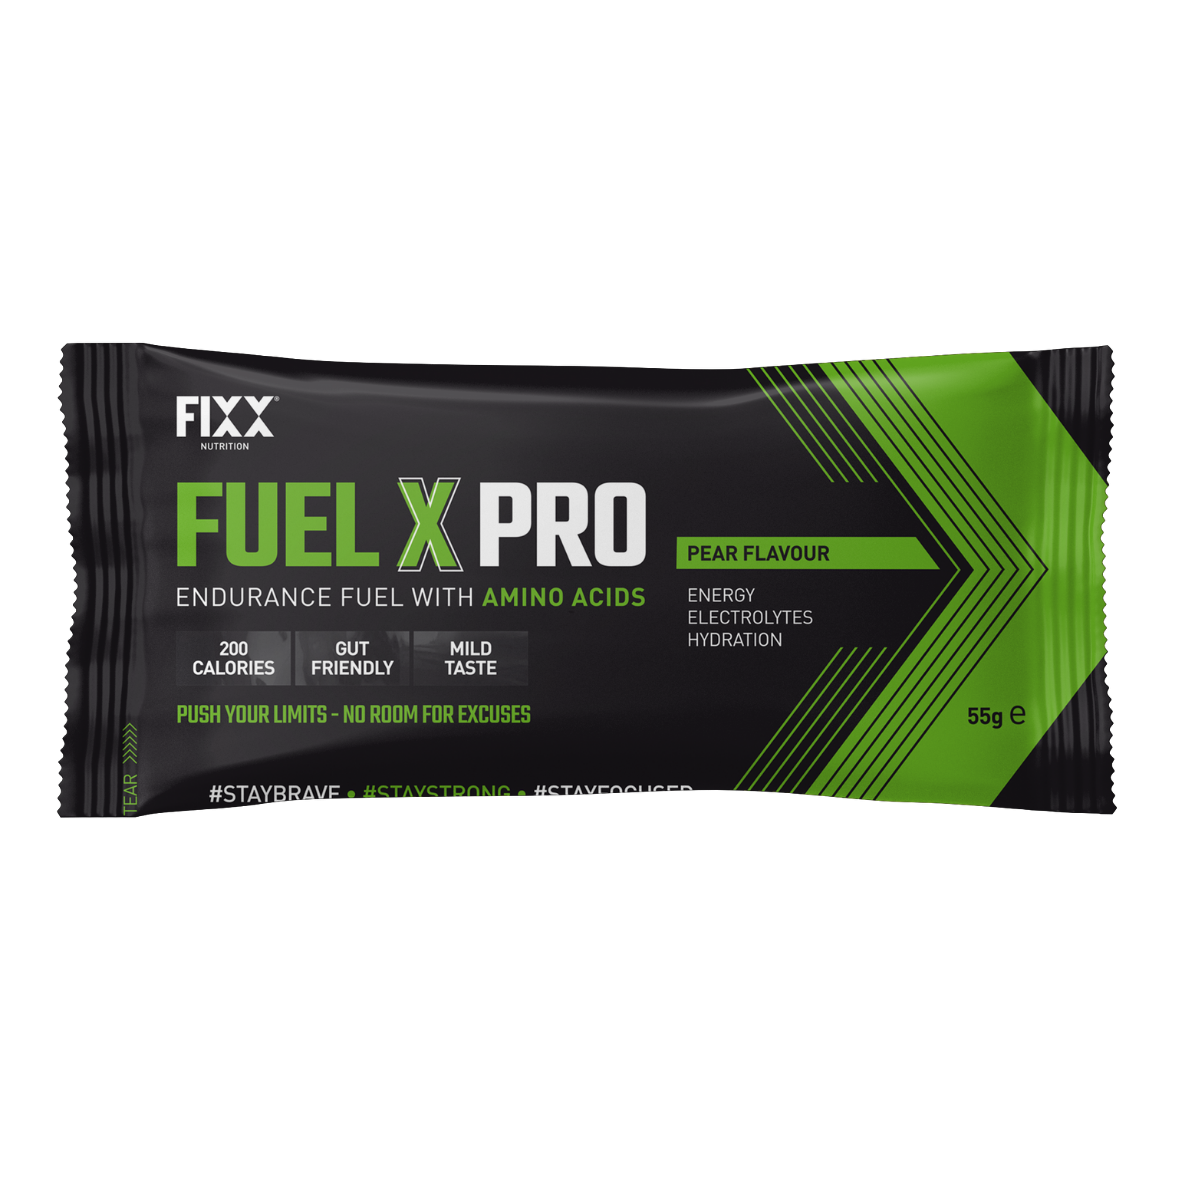 Fixx Nutrition - Fuel X Pro Endurance Fuel - Sachets - Pear